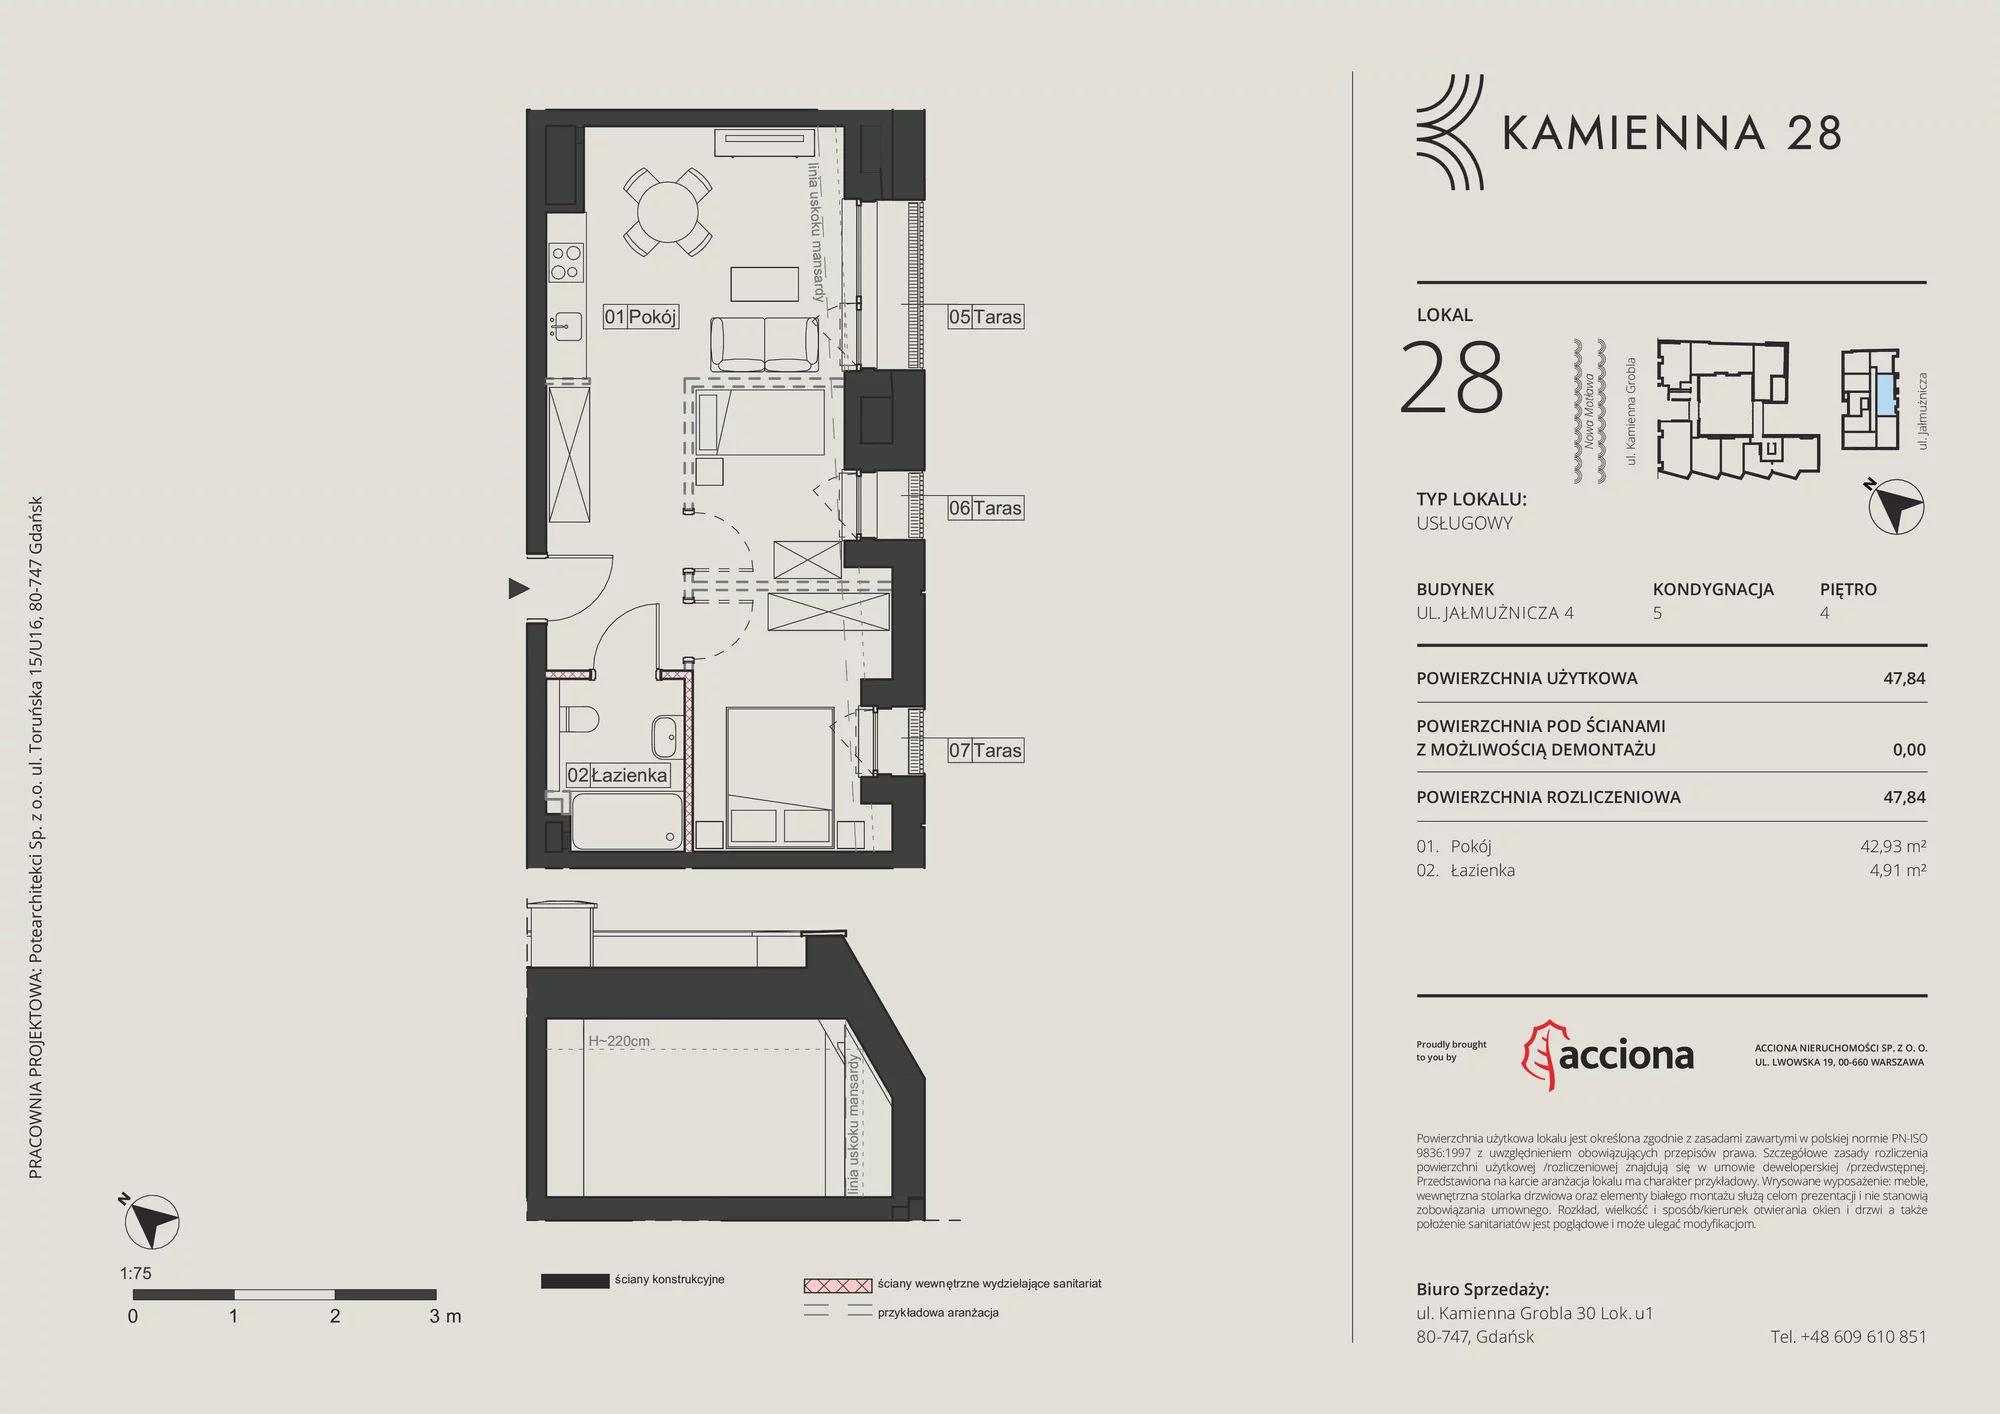 Apartament inwestycyjny 47,84 m², piętro 4, oferta nr 4.28, Kamienna 28 - apartamenty inwestycyjne, Gdańsk, Śródmieście, Dolne Miasto, ul. Jałmużnicza 4